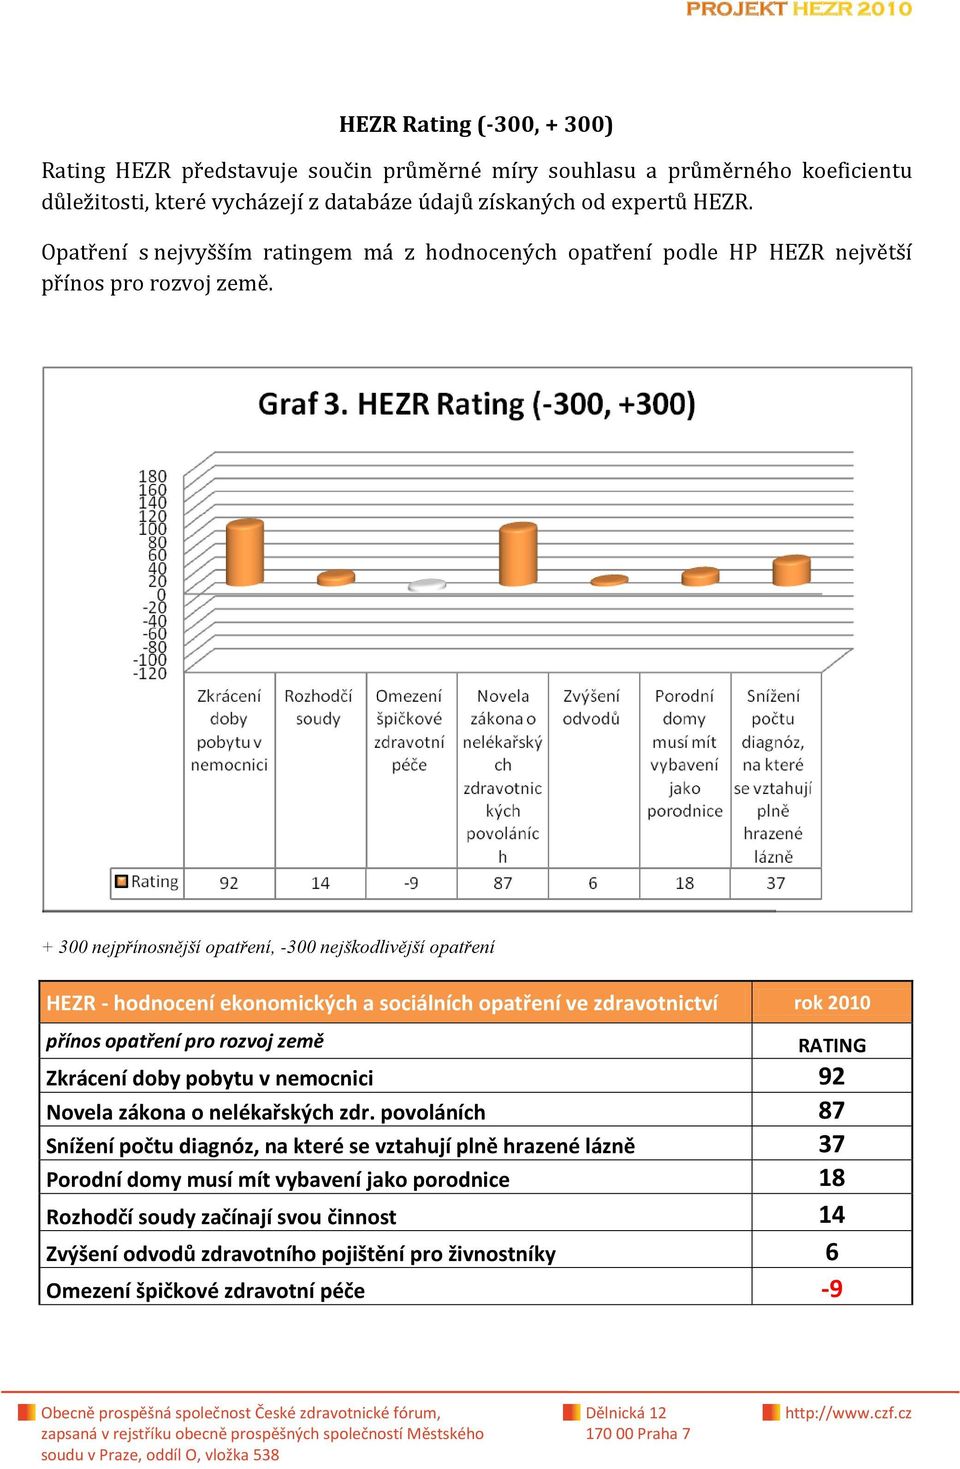 + 300 nejpřínosnější opatření, -300 nejškodlivější opatření HEZR - hodnocení ekonomických a sociálních opatření ve zdravotnictví rok 2010 přínos opatření pro rozvoj země RATING Zkrácení doby